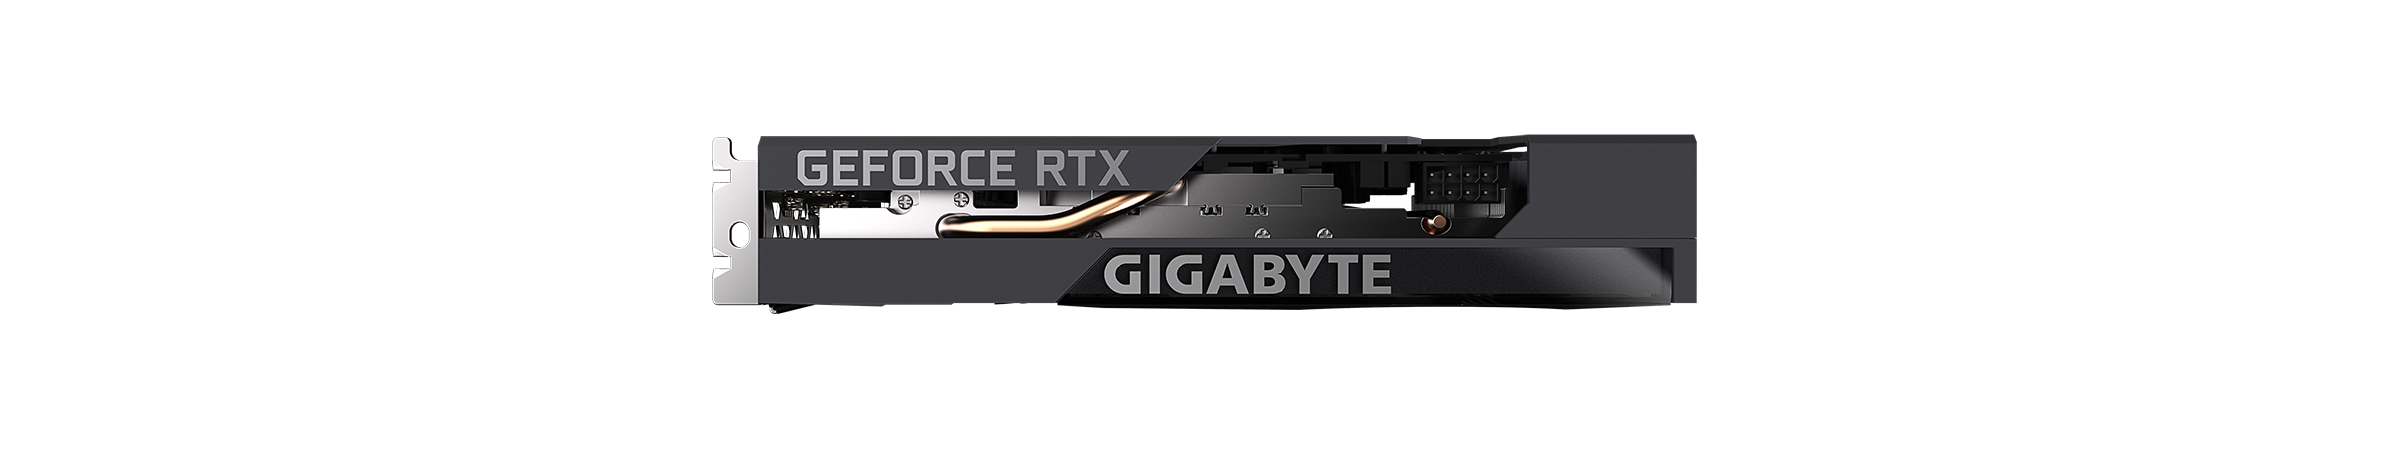 Видеокарта GIGABYTE GeForce RTX 3050 EAGLE OC (GV-N3050EAGLE OC-8GD), изображение 6